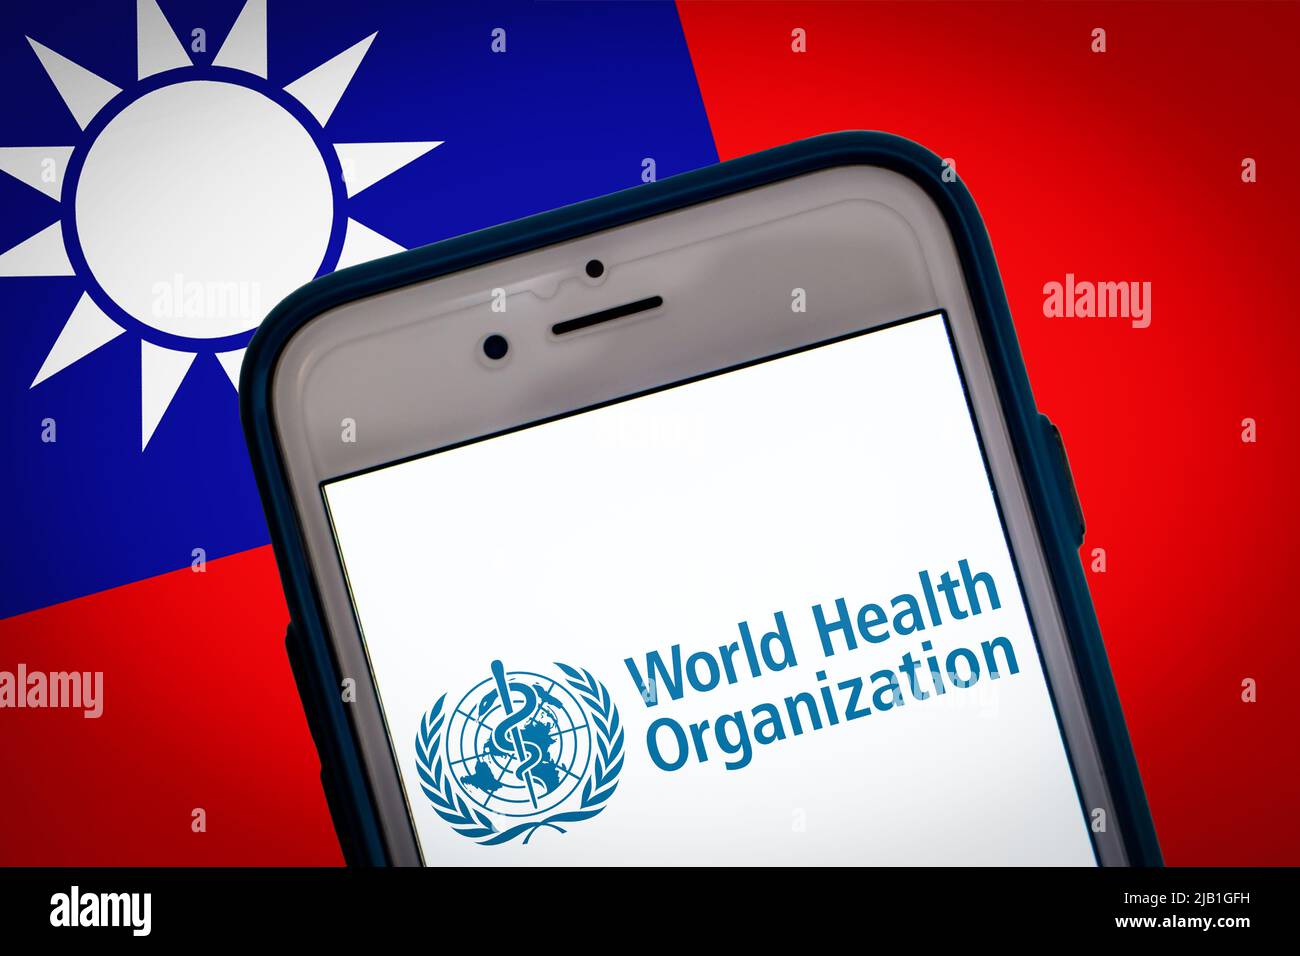 Logo der WHO (Weltgesundheitsorganisation) auf dem Smartphone-Bildschirm auf taiwanesischer Flagge bg. Taiwan ist trotz des Erfolgs des Coronavirus noch nicht zur WHO eingeladen Stockfoto